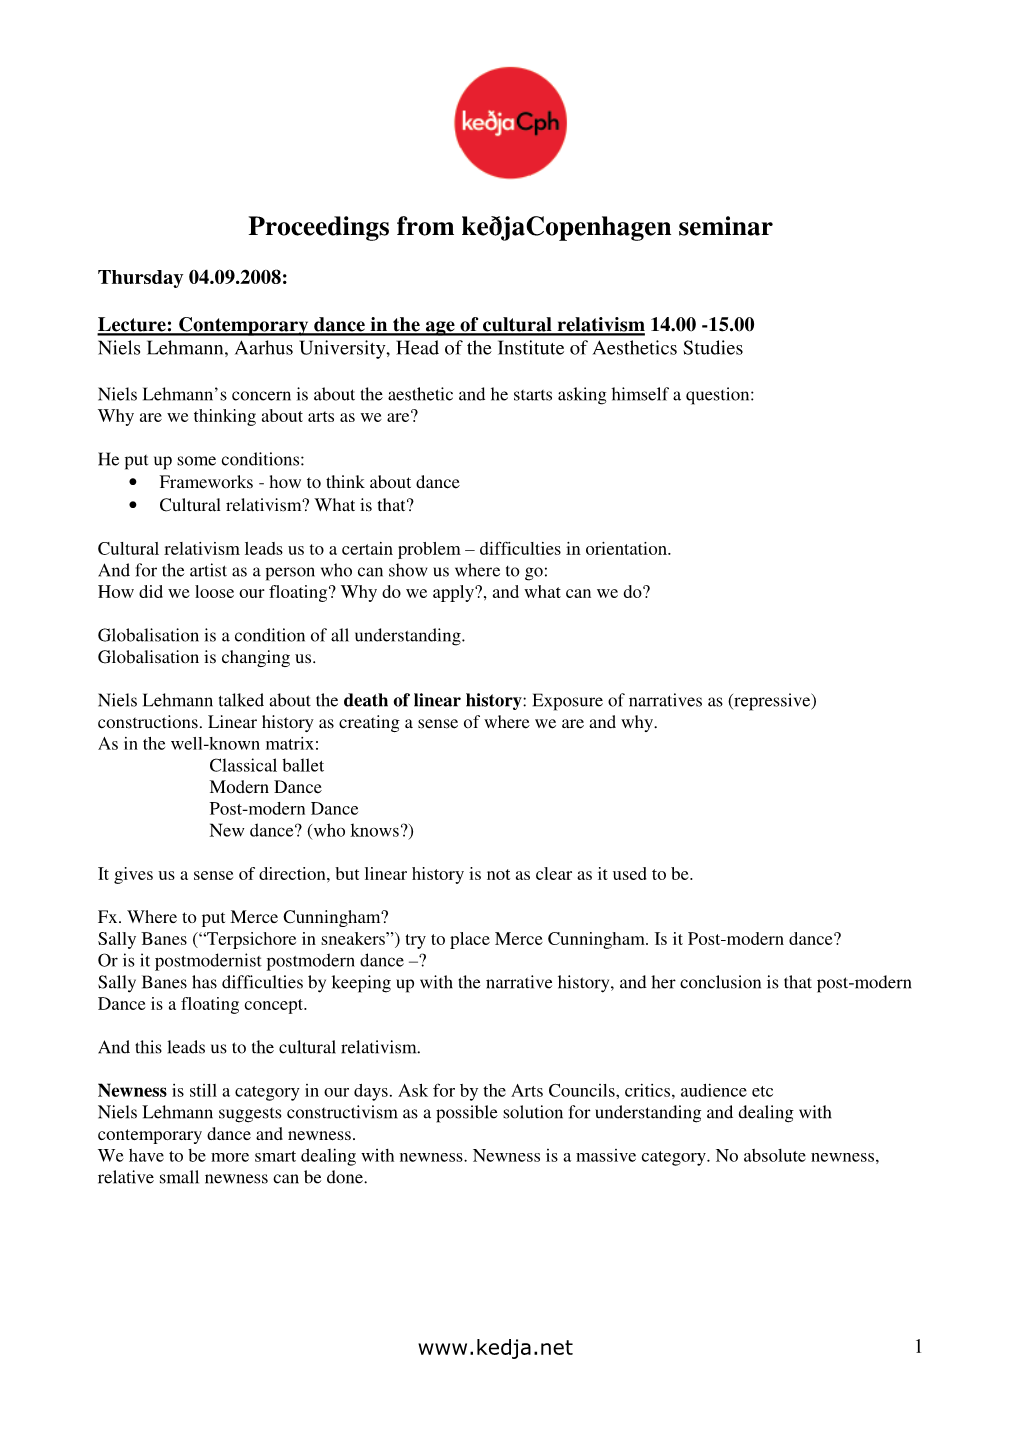 Proceedings from Keðjacopenhagen Seminar